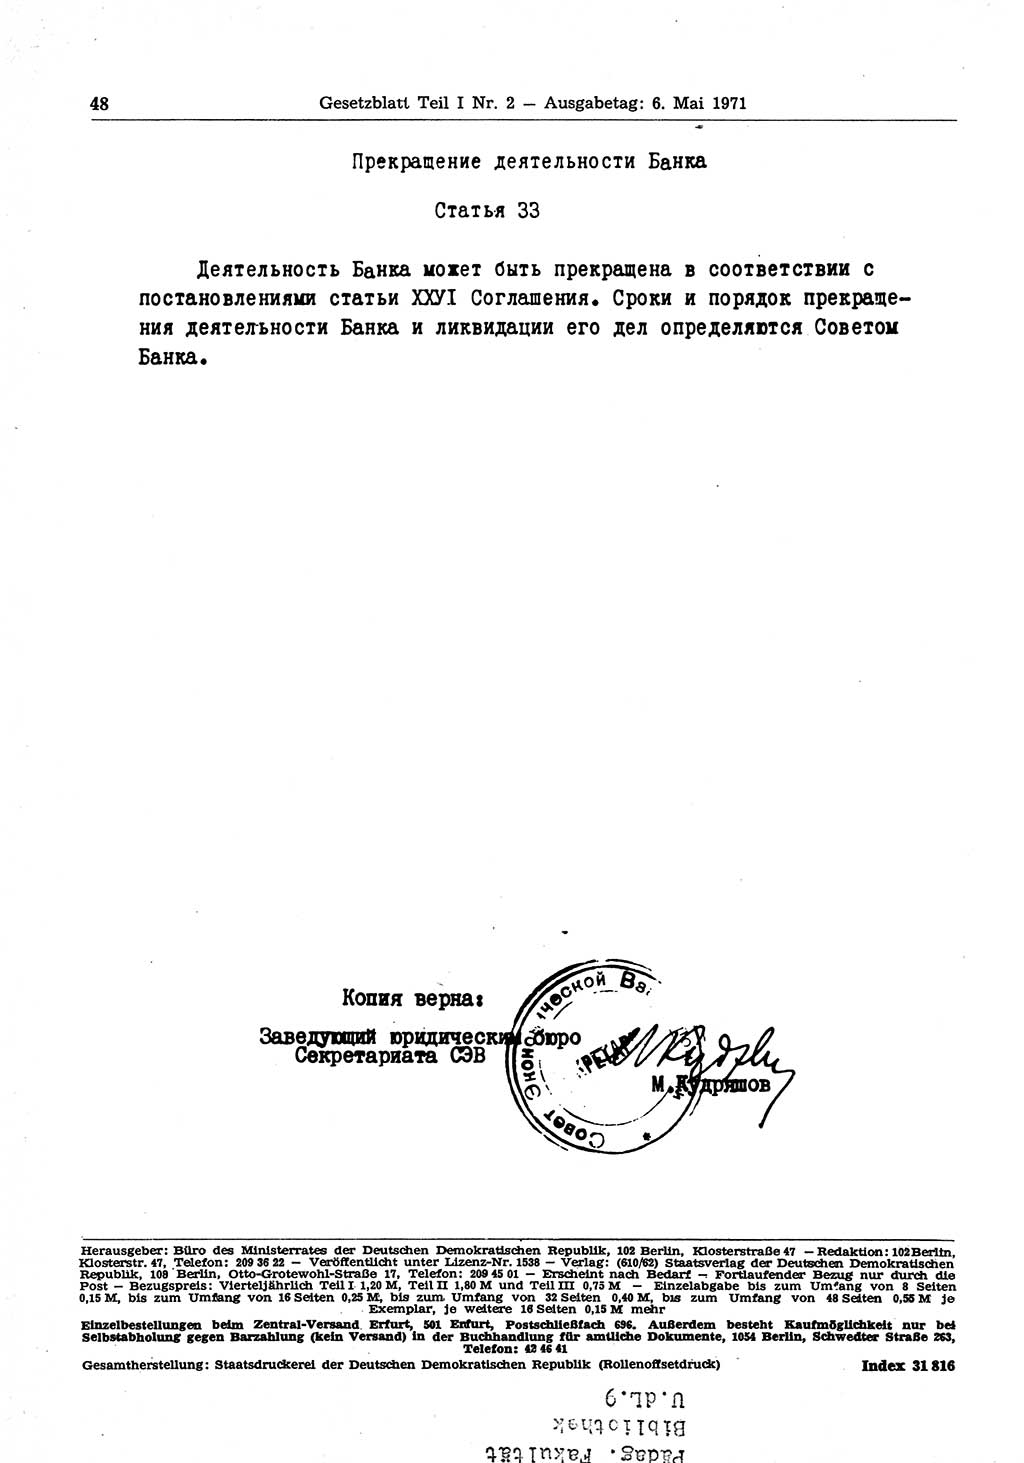 Gesetzblatt (GBl.) der Deutschen Demokratischen Republik (DDR) Teil Ⅰ 1971, Seite 48 (GBl. DDR Ⅰ 1971, S. 48)